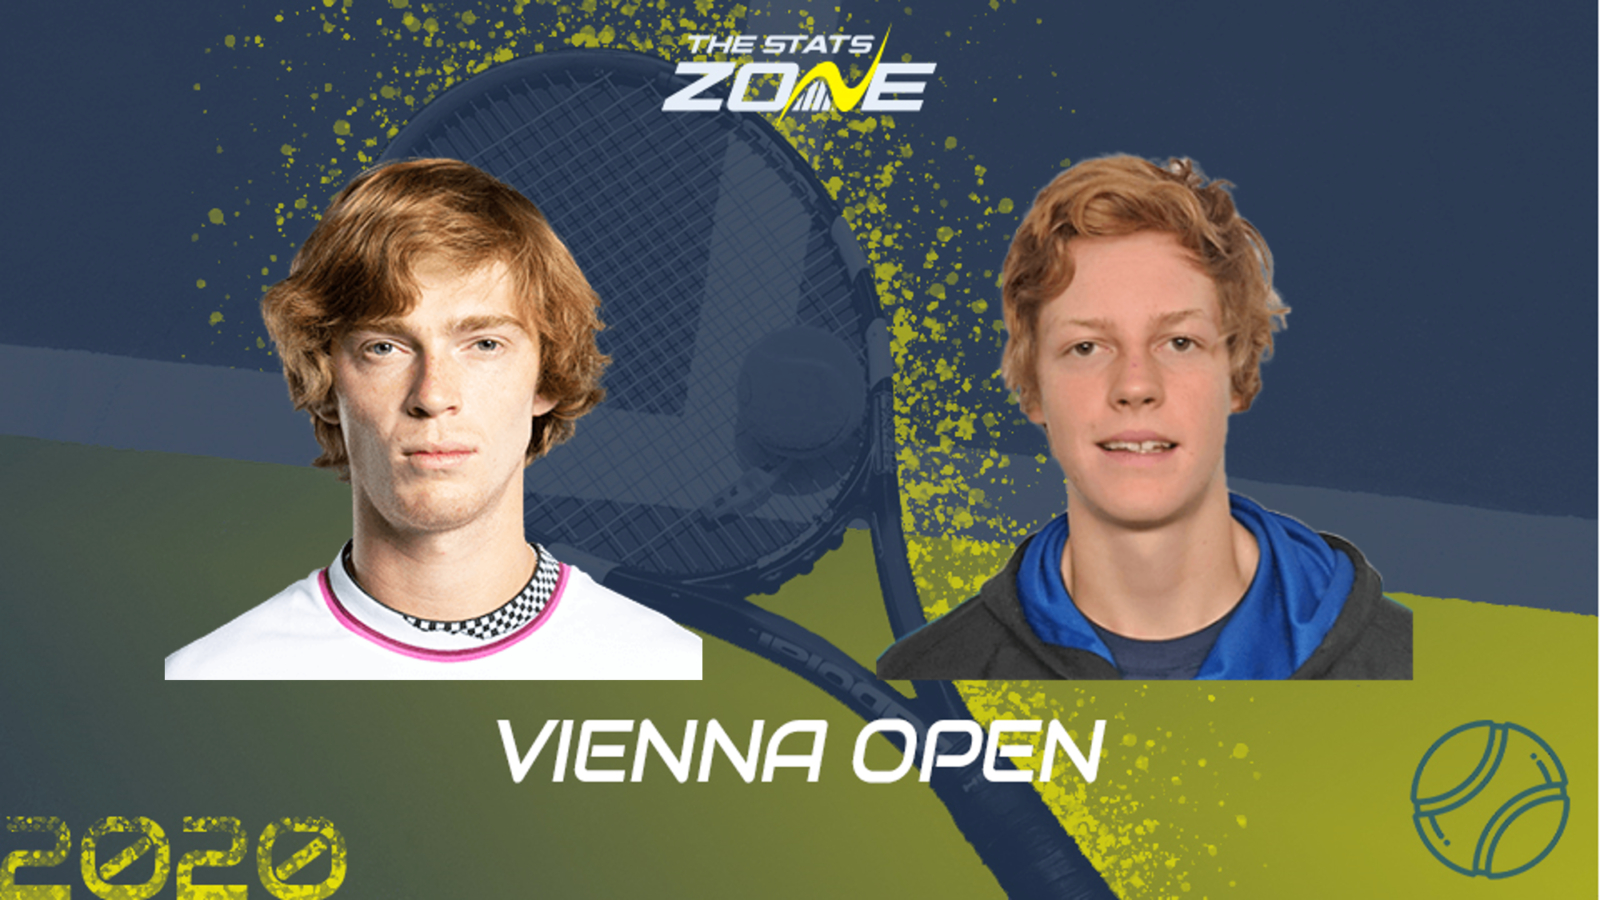 2020 Vienna Open Round of 16